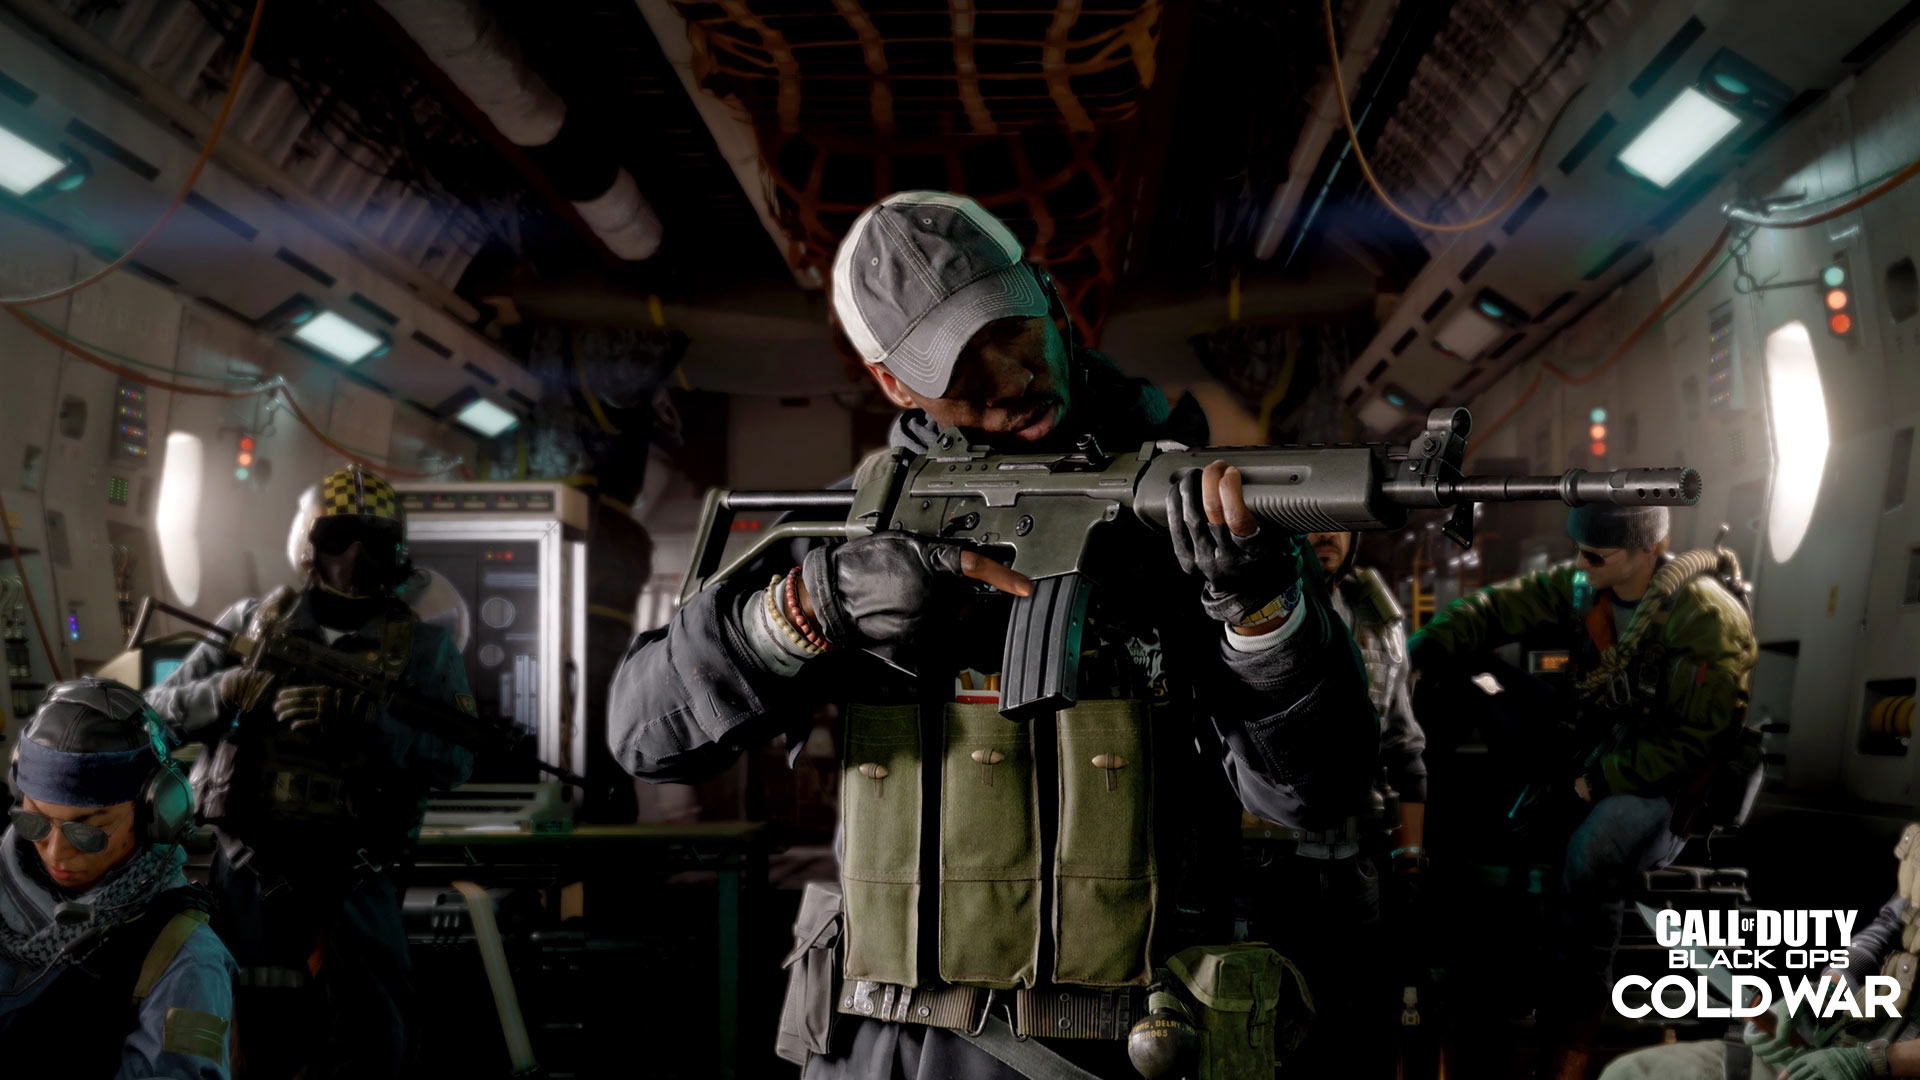 Presentamos el multijugador de Call of Duty®: Black Ops Cold War